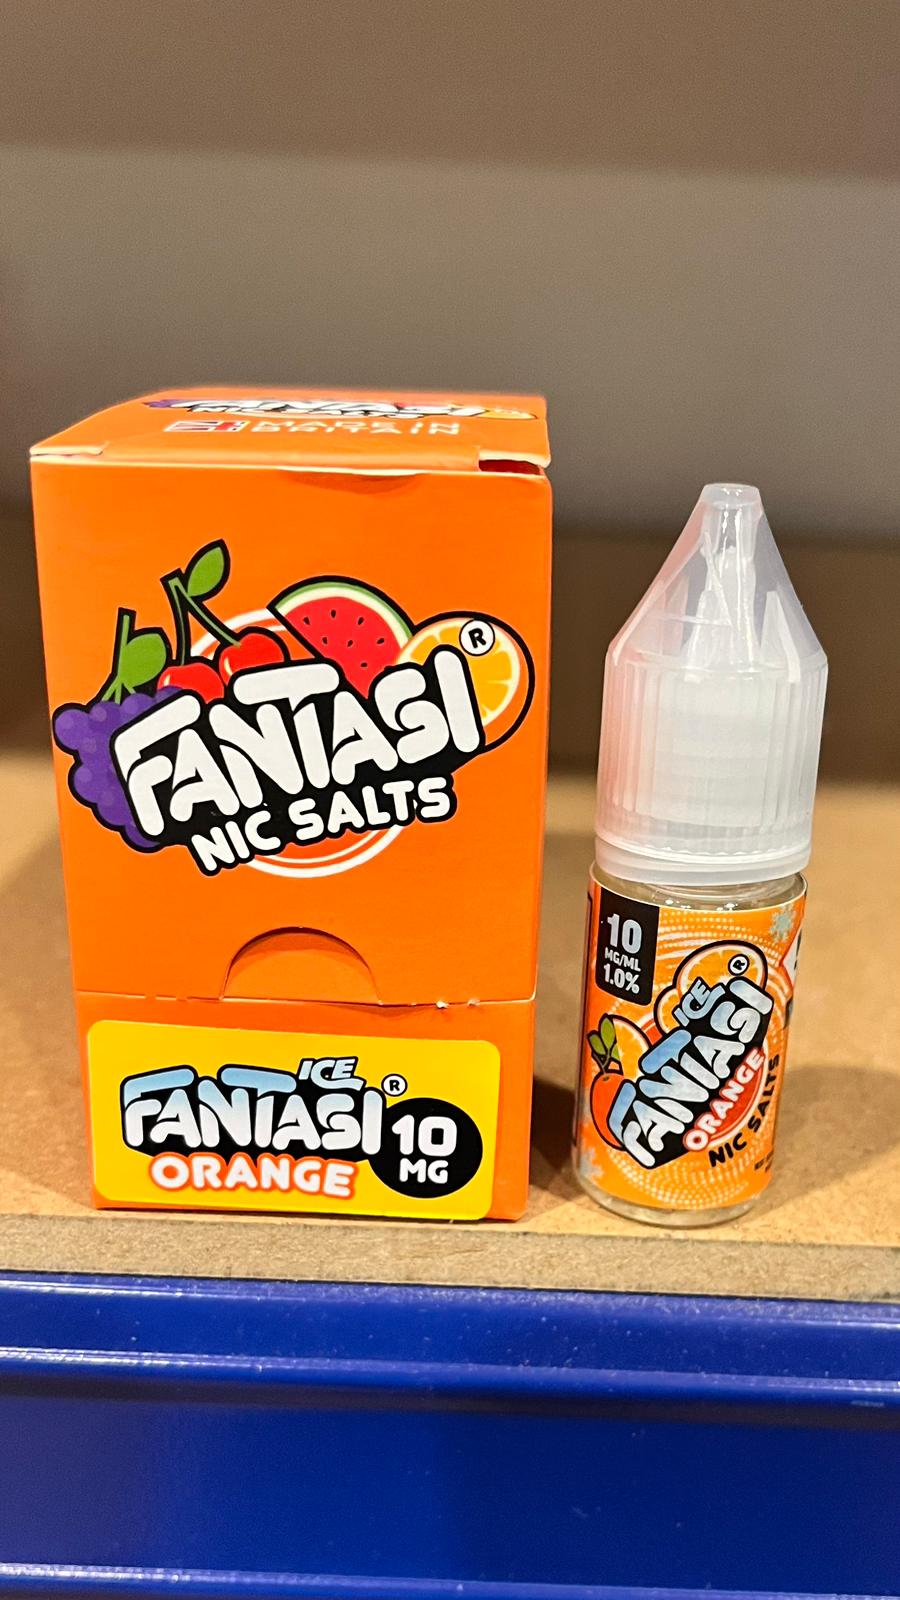 Fantasi Ice Salts - Orange